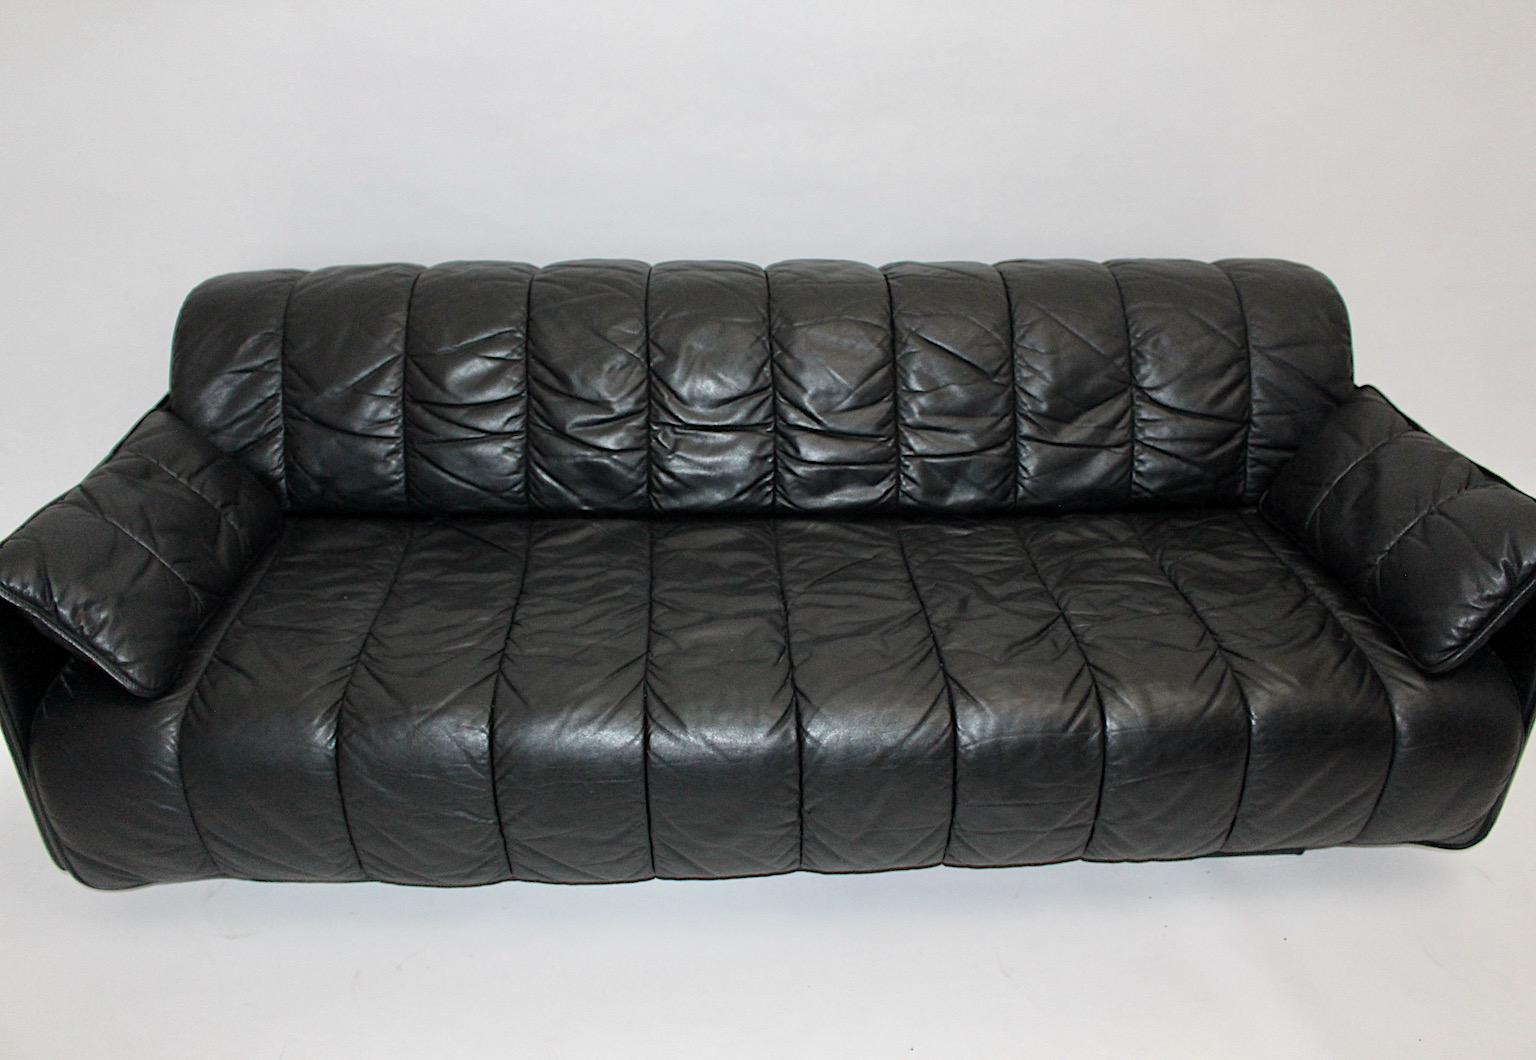 Canapé ou lit de jour vintage DeSede DS 69 en cuir noir surpiqué de haute qualité années 1970 Suisse.
Bien que ce magnifique et confortable canapé puisse également être utilisé comme siège indépendant, sa fonction extensible permet de personnaliser